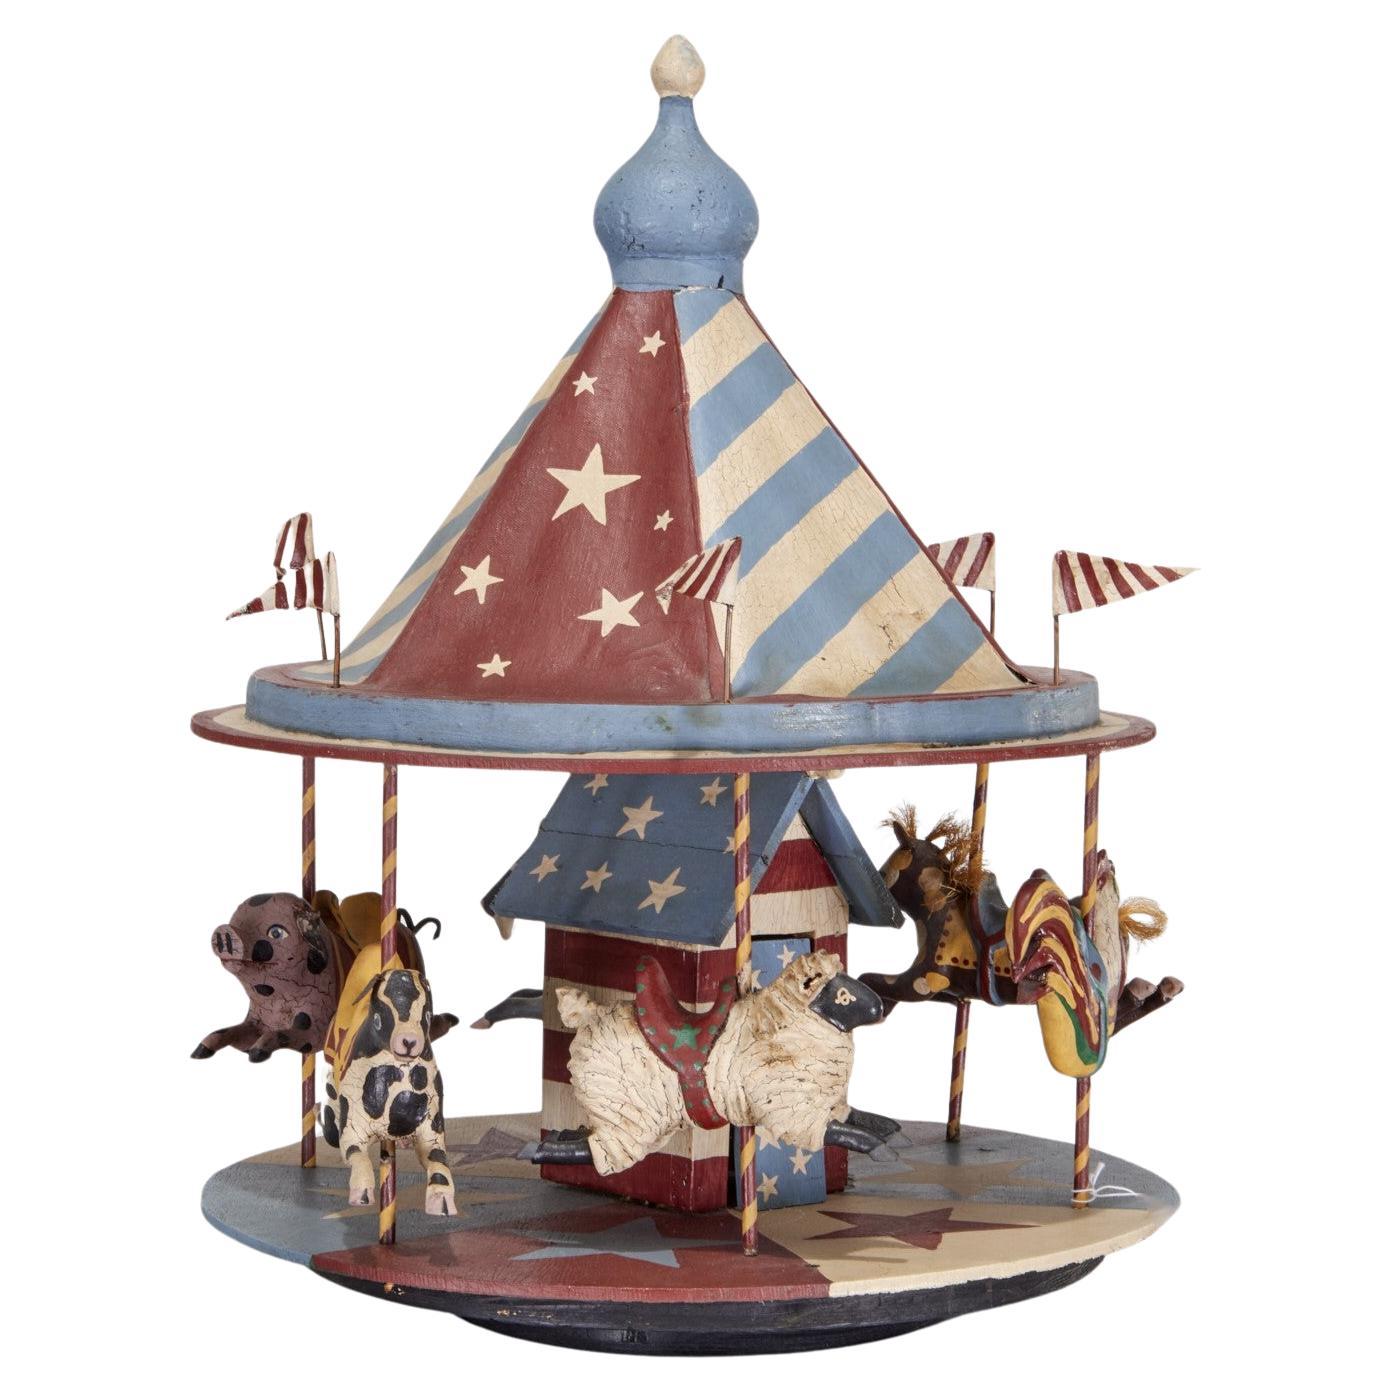 Grand manège d'art populaire américain du 20e siècle avec animaux de ferme peints